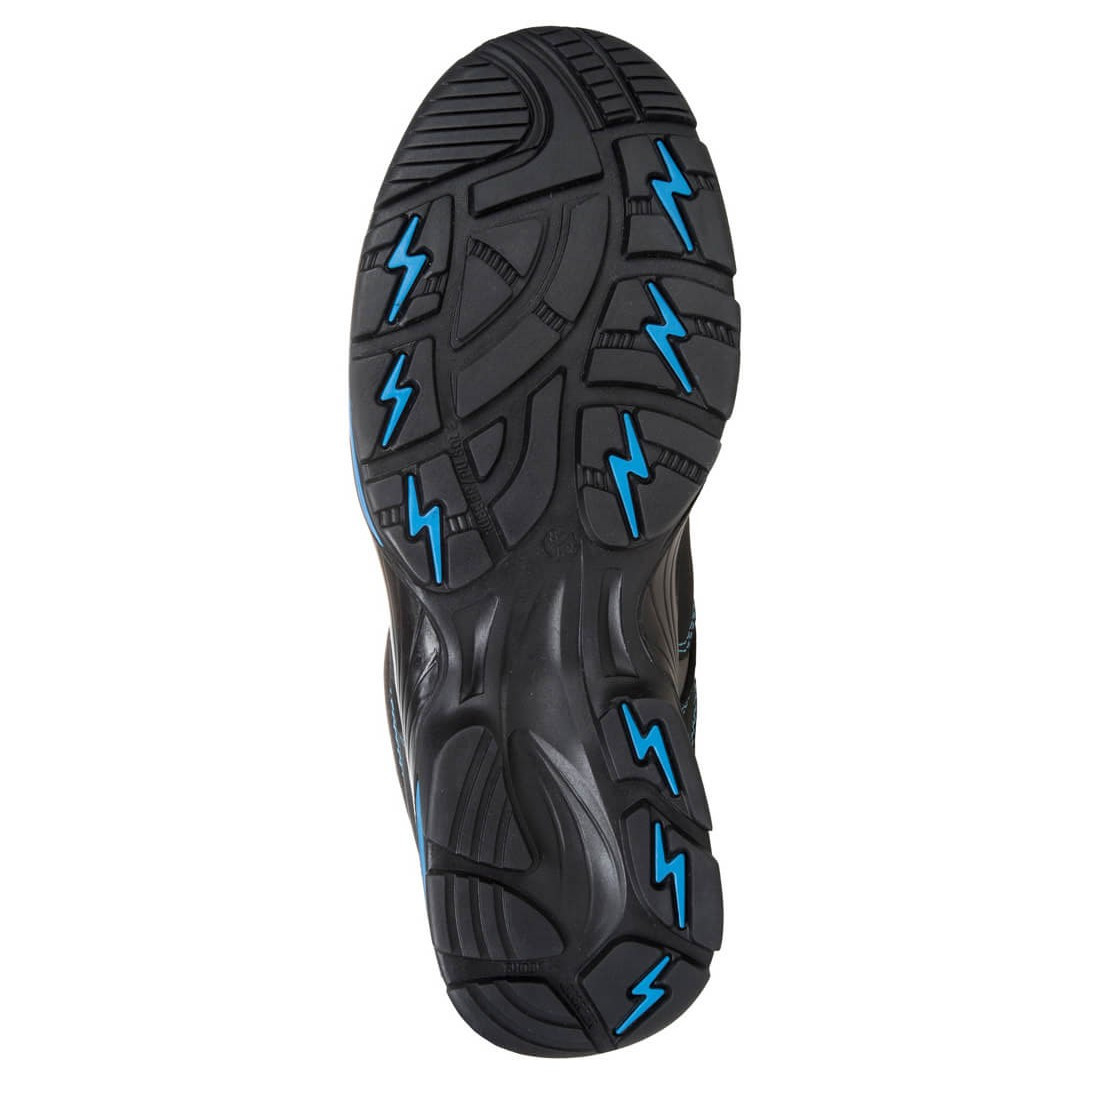 Zapato Operis Compositelite™ S3 HRO - Calzado de protección